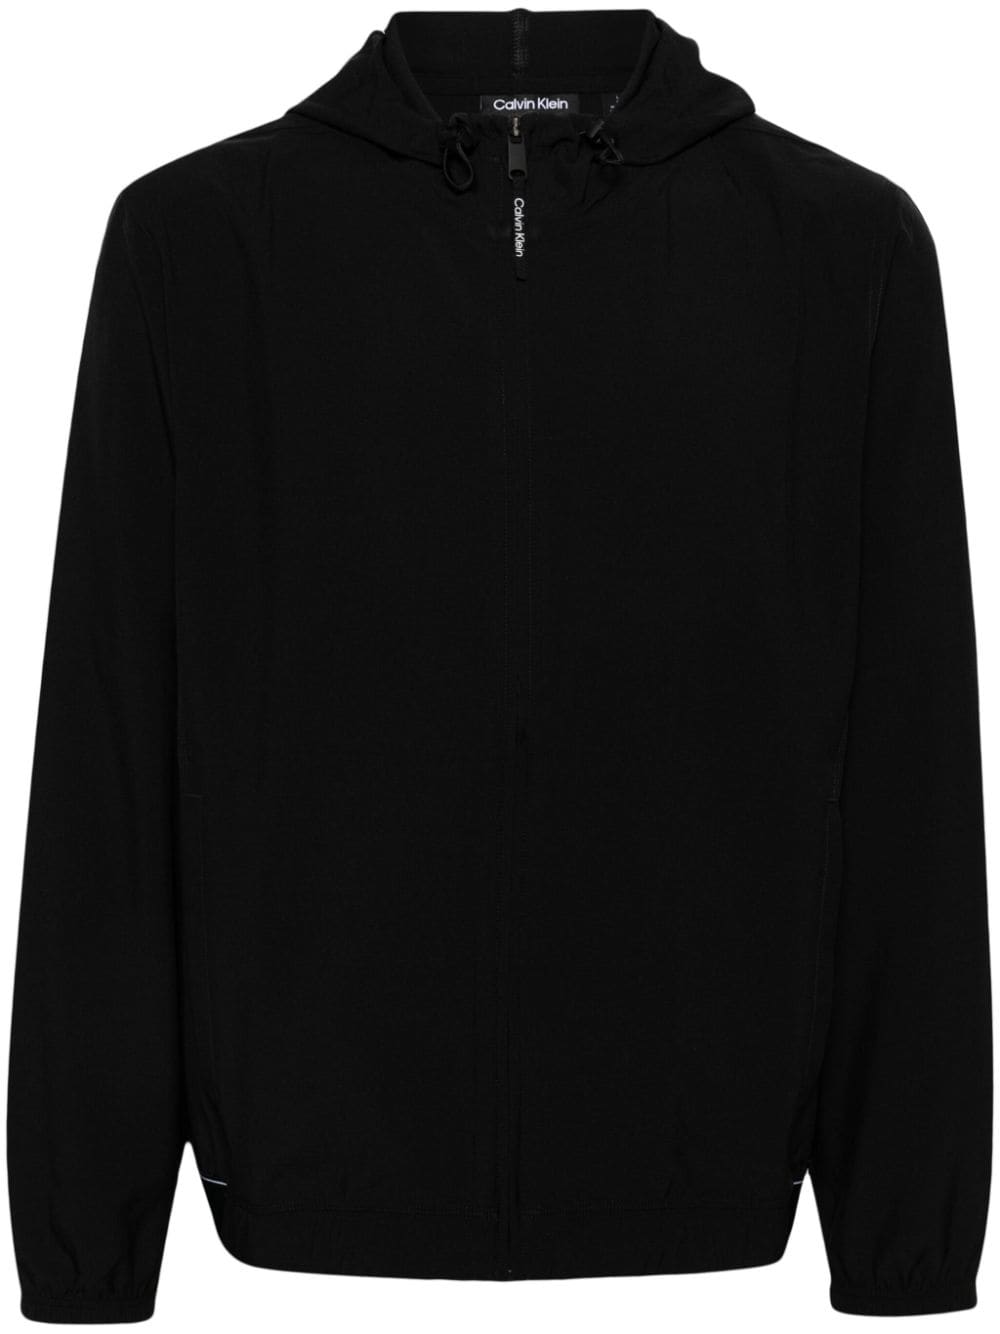 Image 1 of Calvin Klein hooded windbreaker jacket